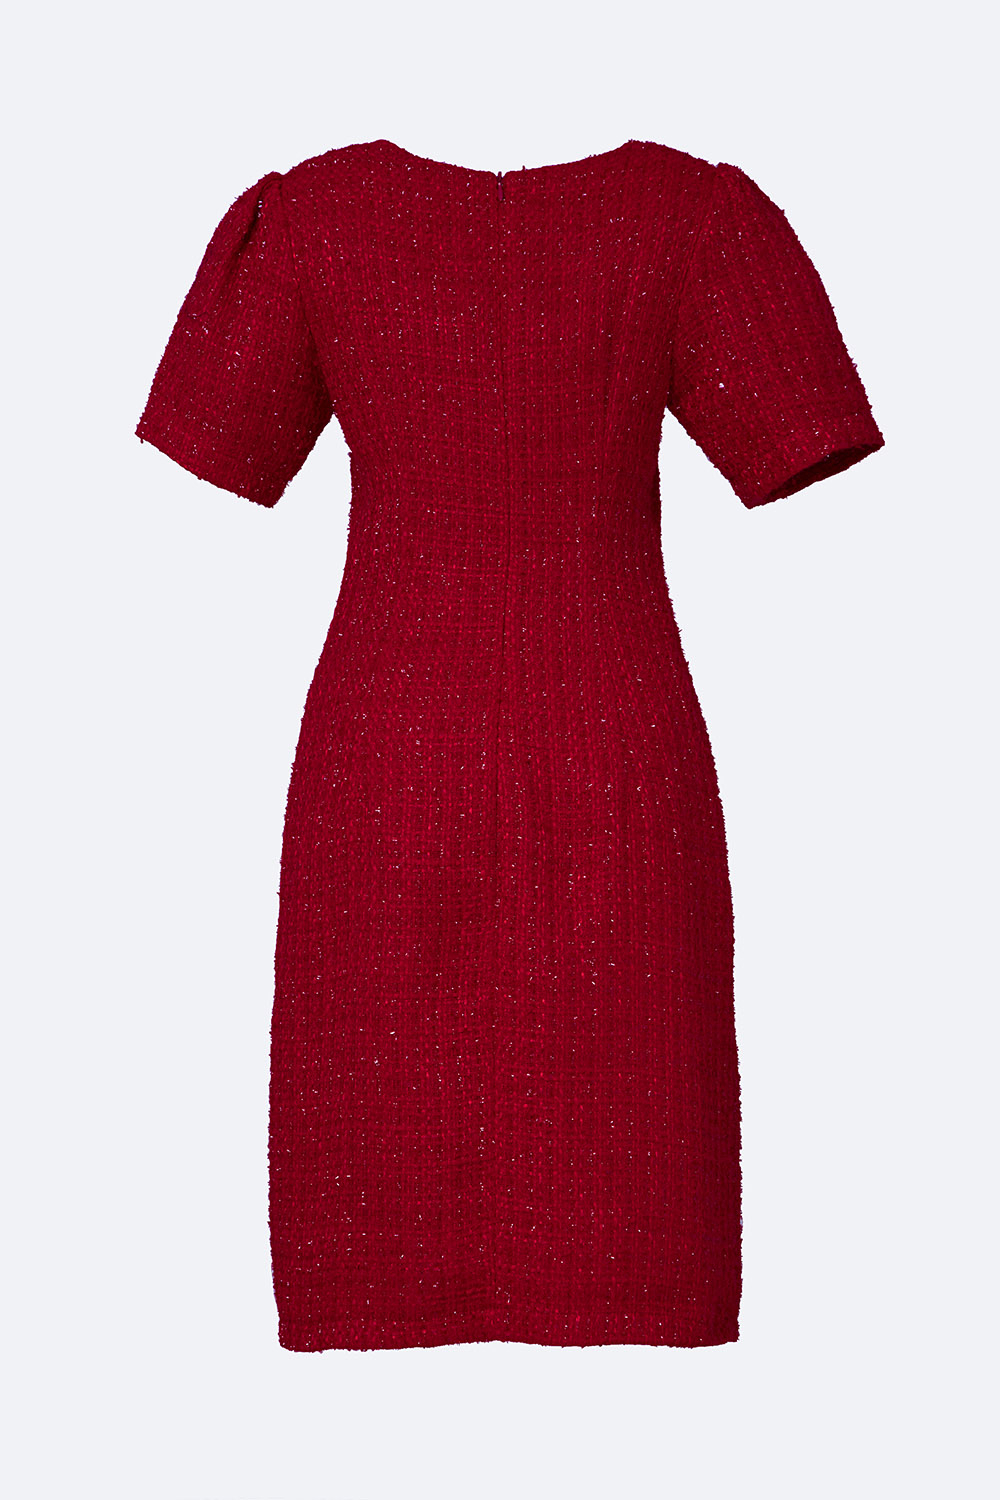 Lep' - Váy tơ hồng - LV033DO: 650k Size: S, M, L Túi: Xéo Xọ | Facebook